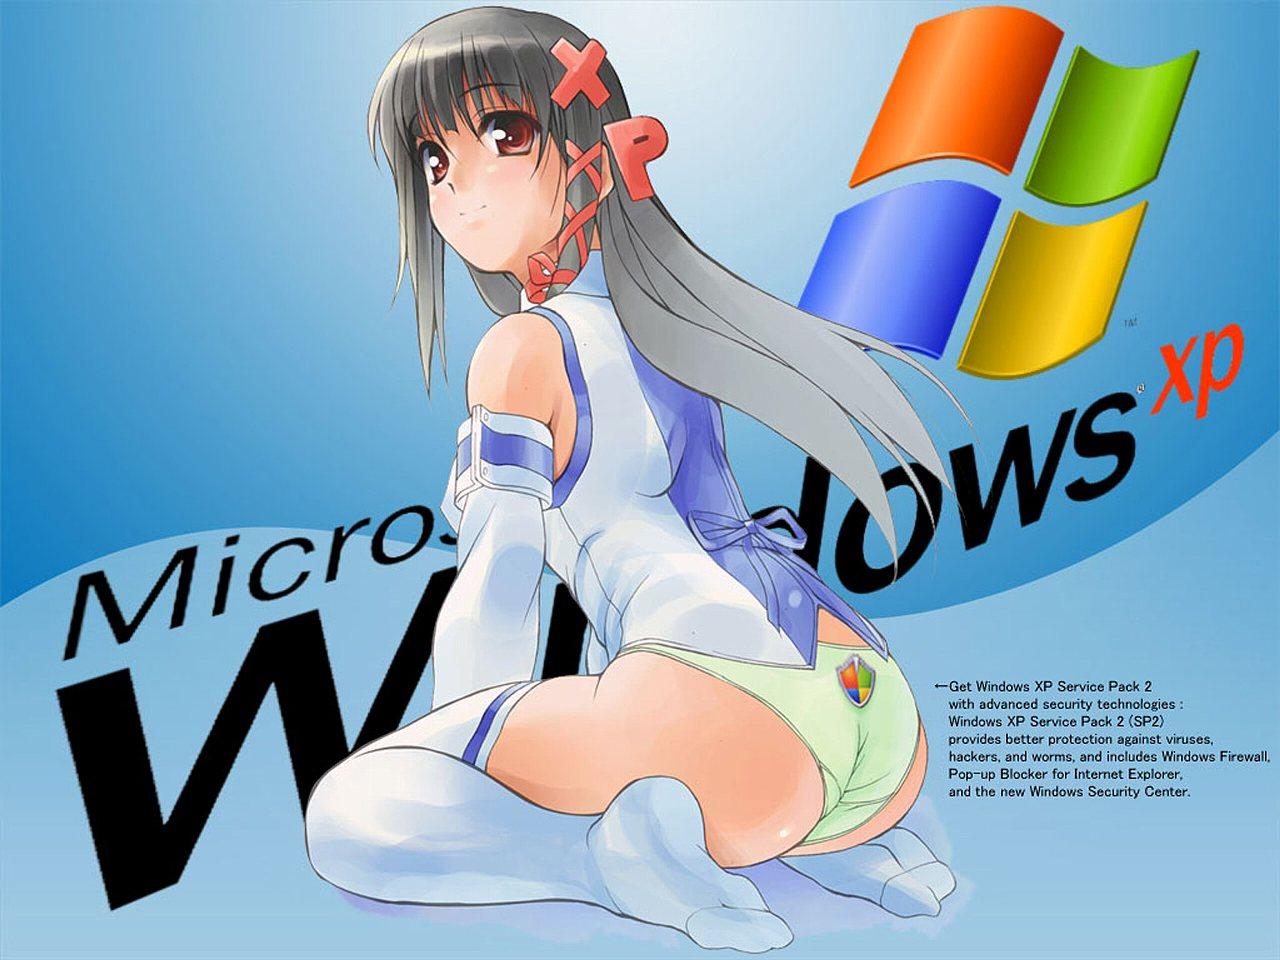 Wallpaper belle fille Theme Windows XP Sexy